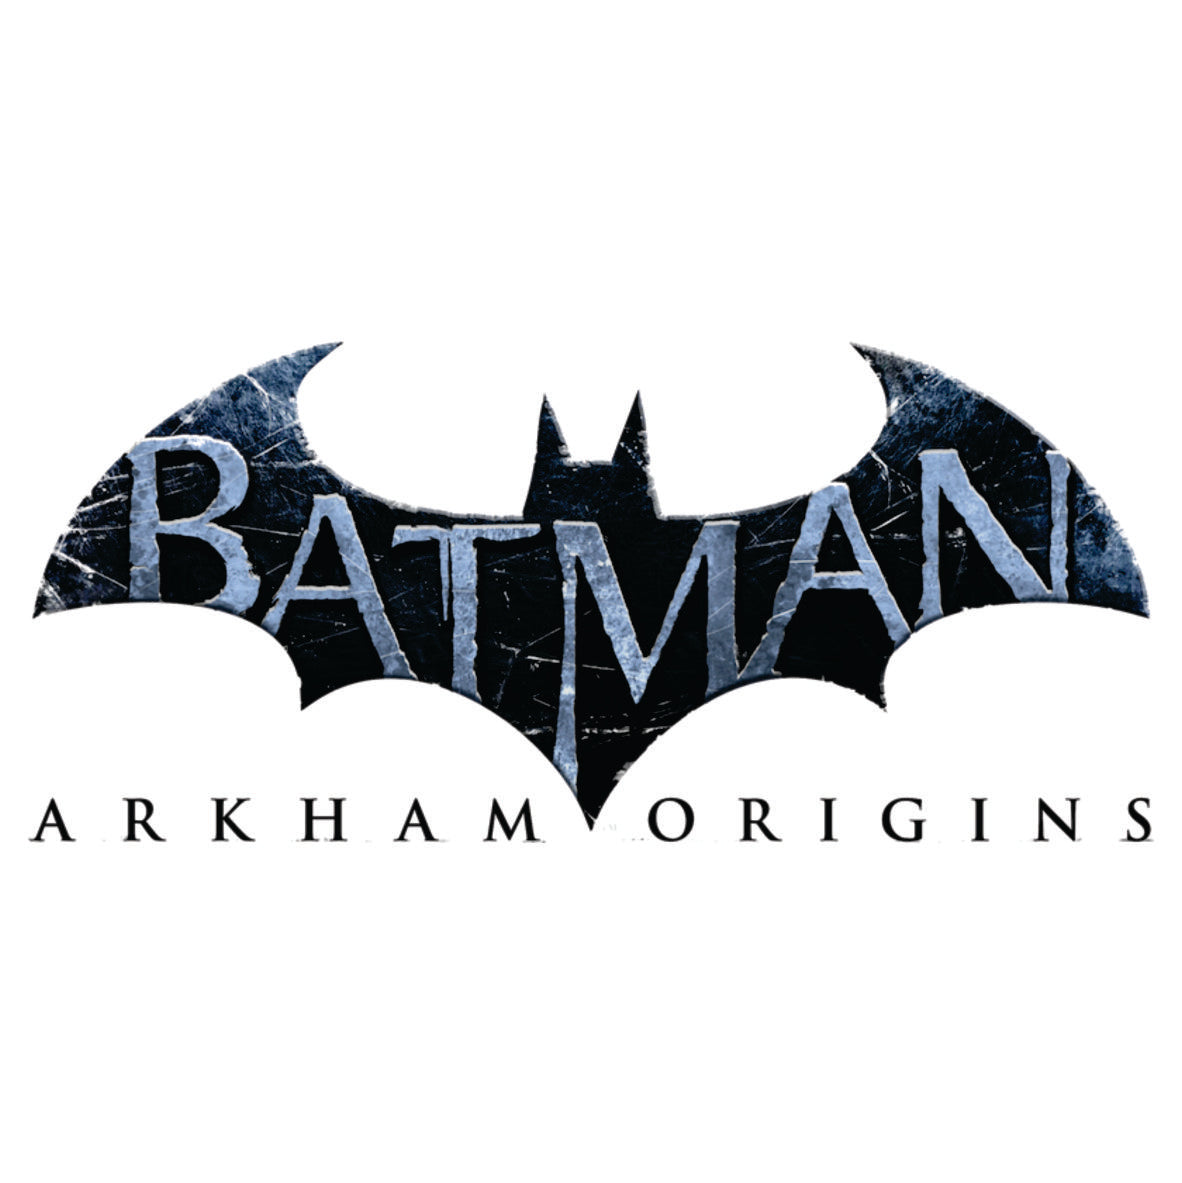 Arkham Origins